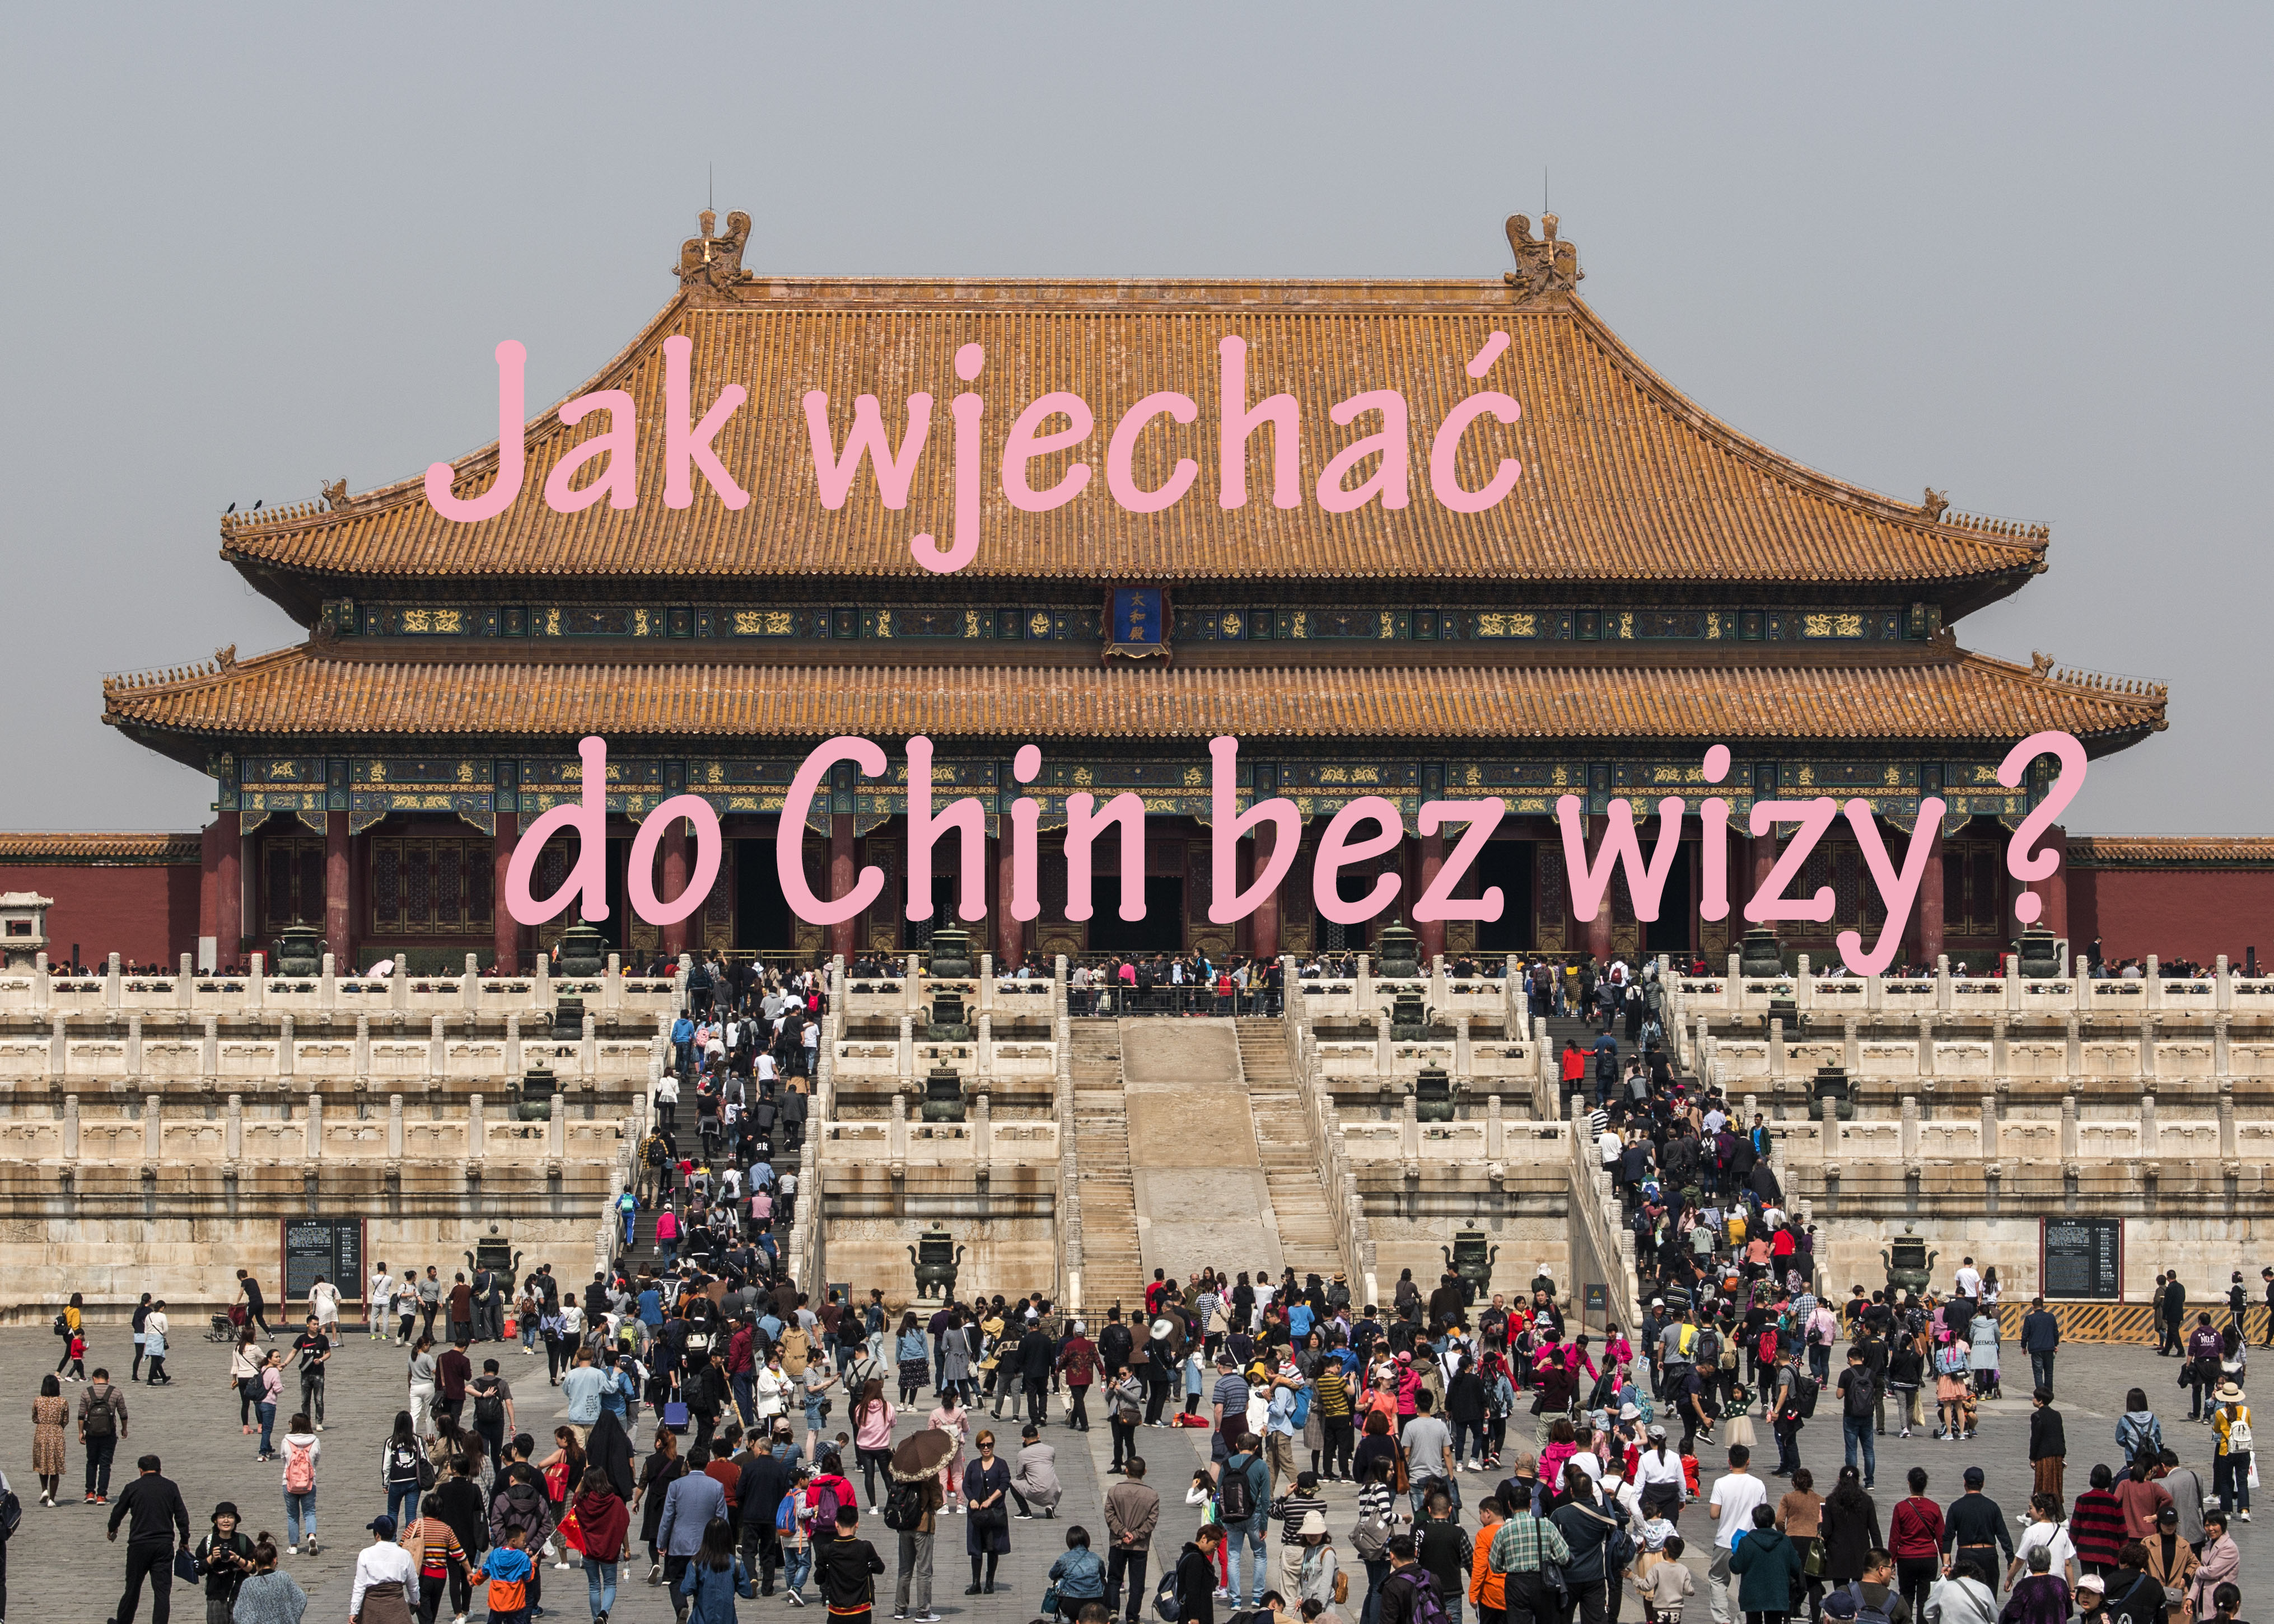 Do Chin bez wizy